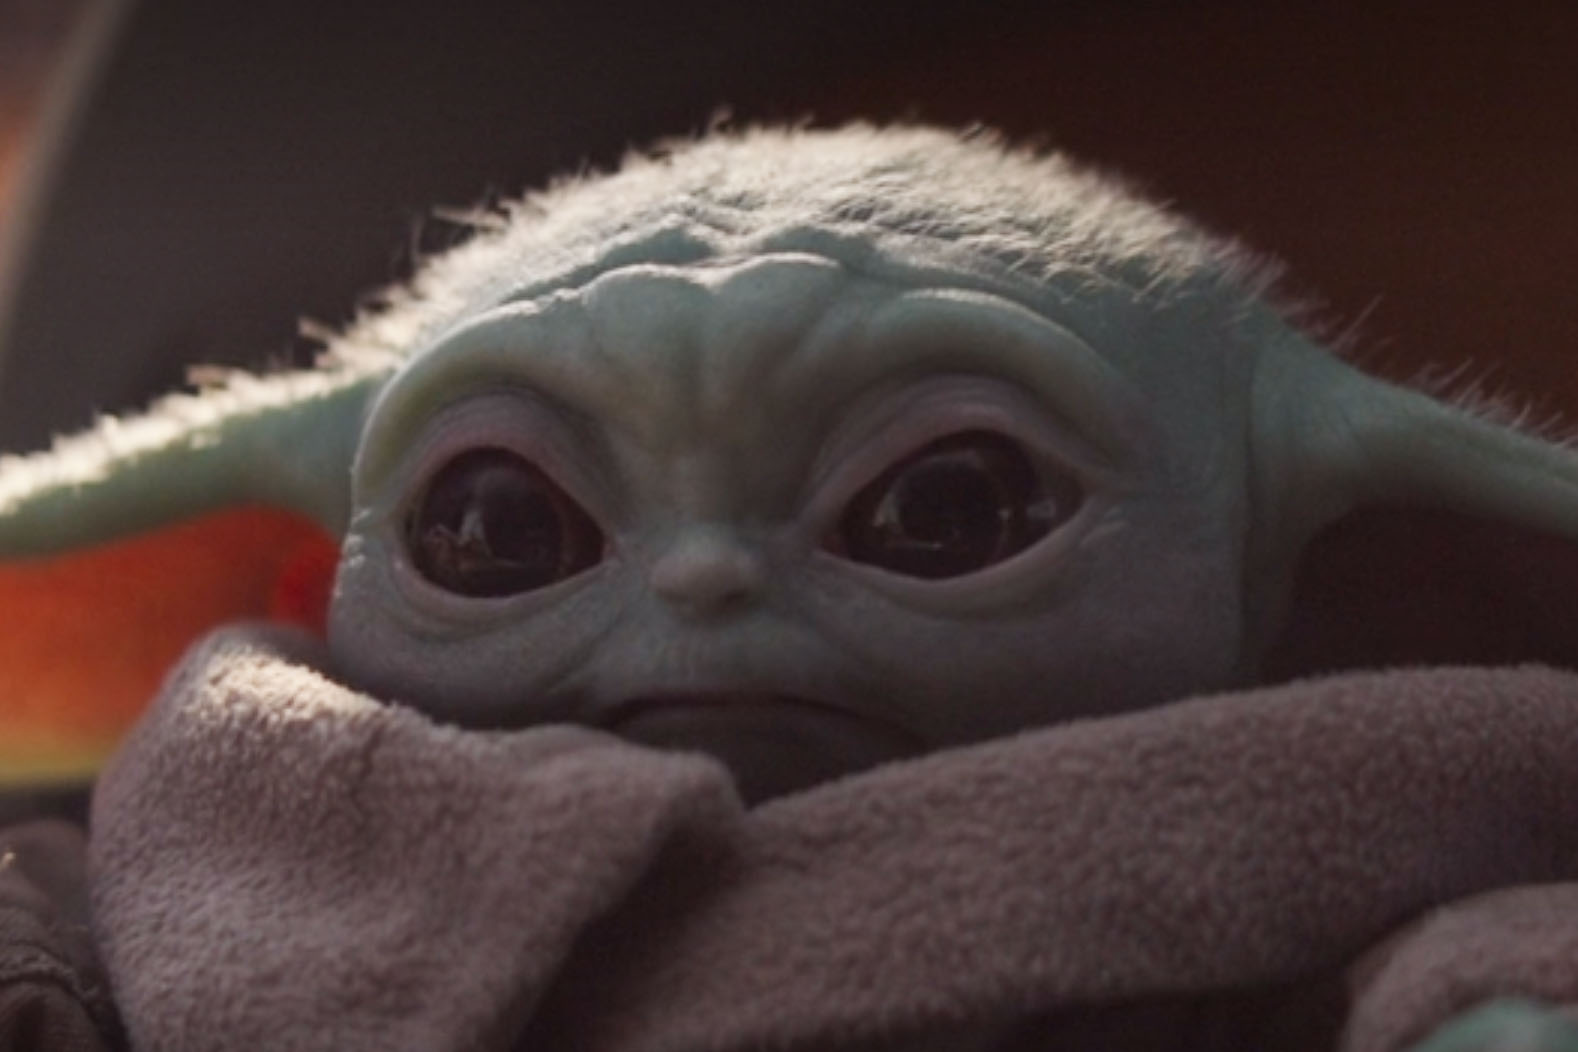 Baby Yoda official